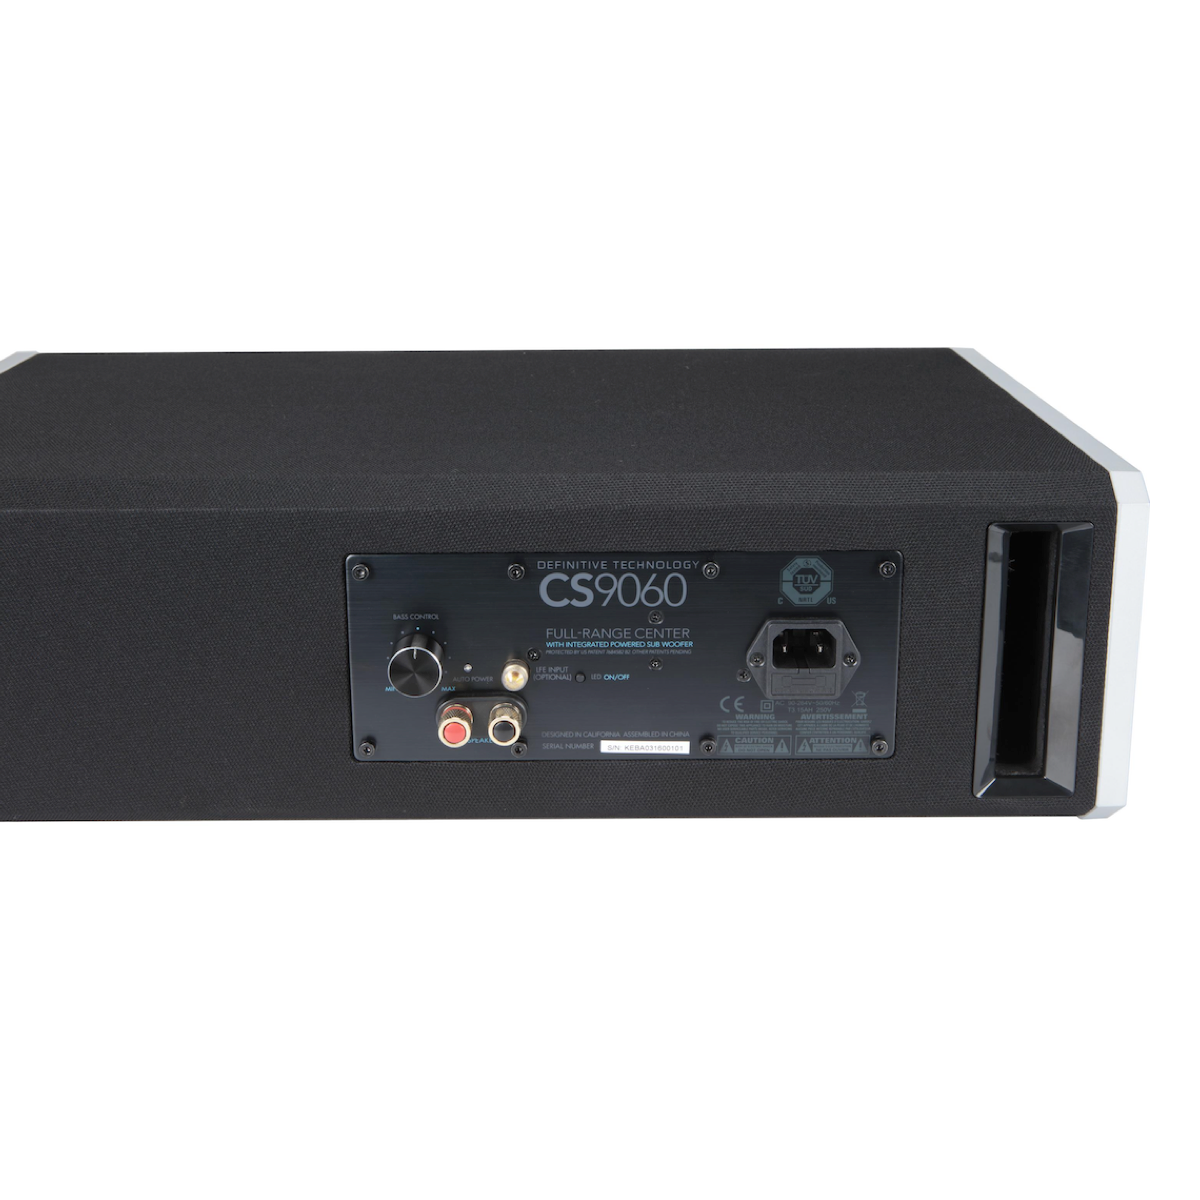 Definitive Technology CS9060 - Center Channel Speaker - AVStore